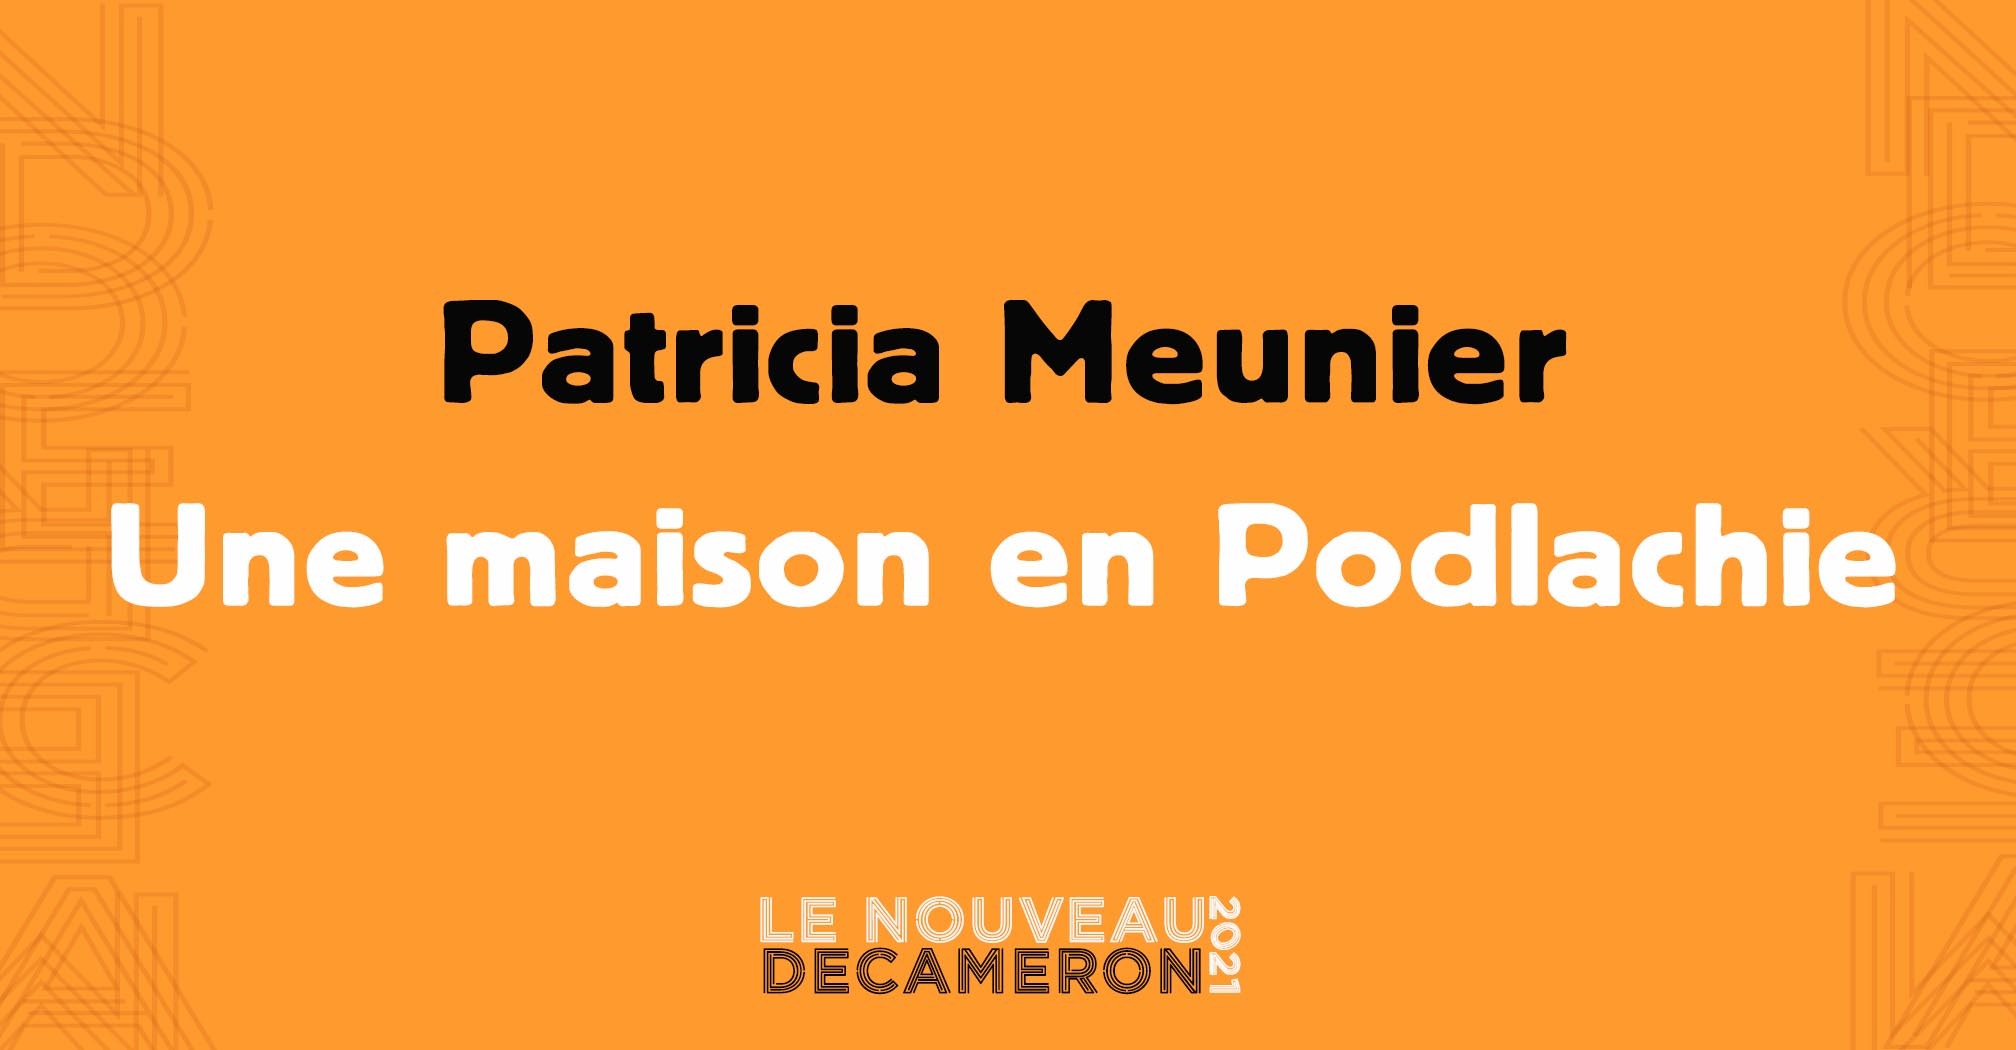 Patricia Meunier - Une maison en Podlachie